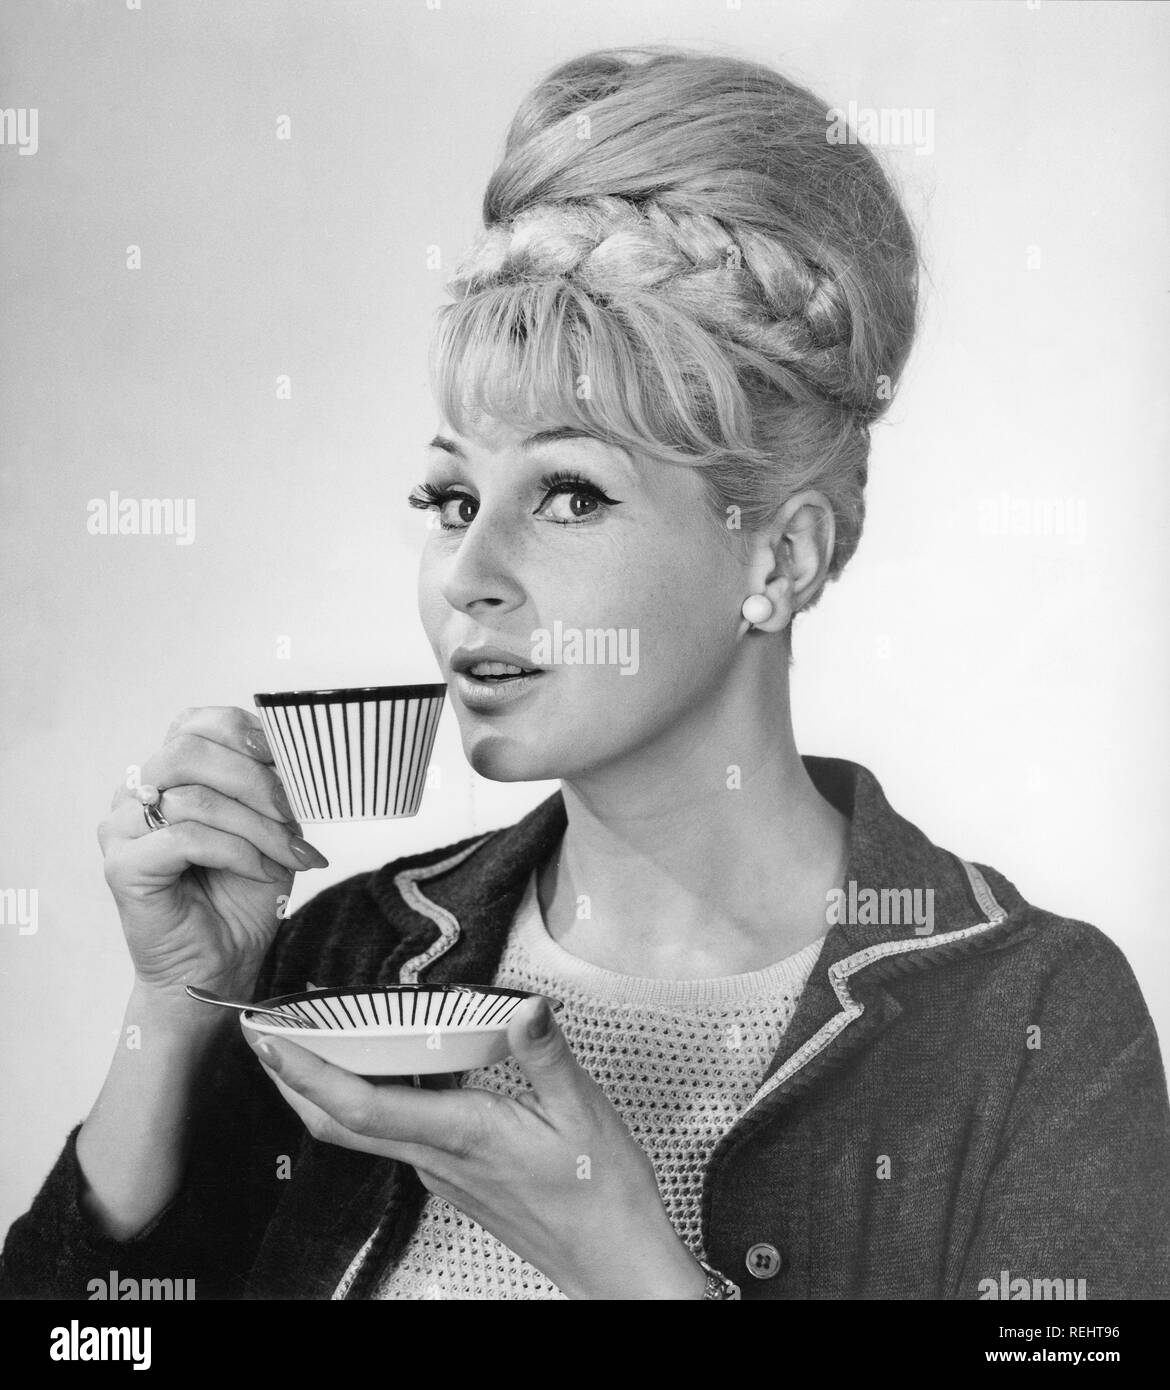 Kaffee in den 1960er Jahren. Eine Frau trinkt Kaffee aus einer Kaffeetasse mit einem 1960er Streifenmuster. Sie hat ihr Haar in den typischen Bienenstock Frisur, in denen lange Haare auf dem Kopf aufgetürmt ist und eine gewisse Ähnlichkeit mit der Form eines traditionellen Bienenstock. Schweden 1962 Stockfoto